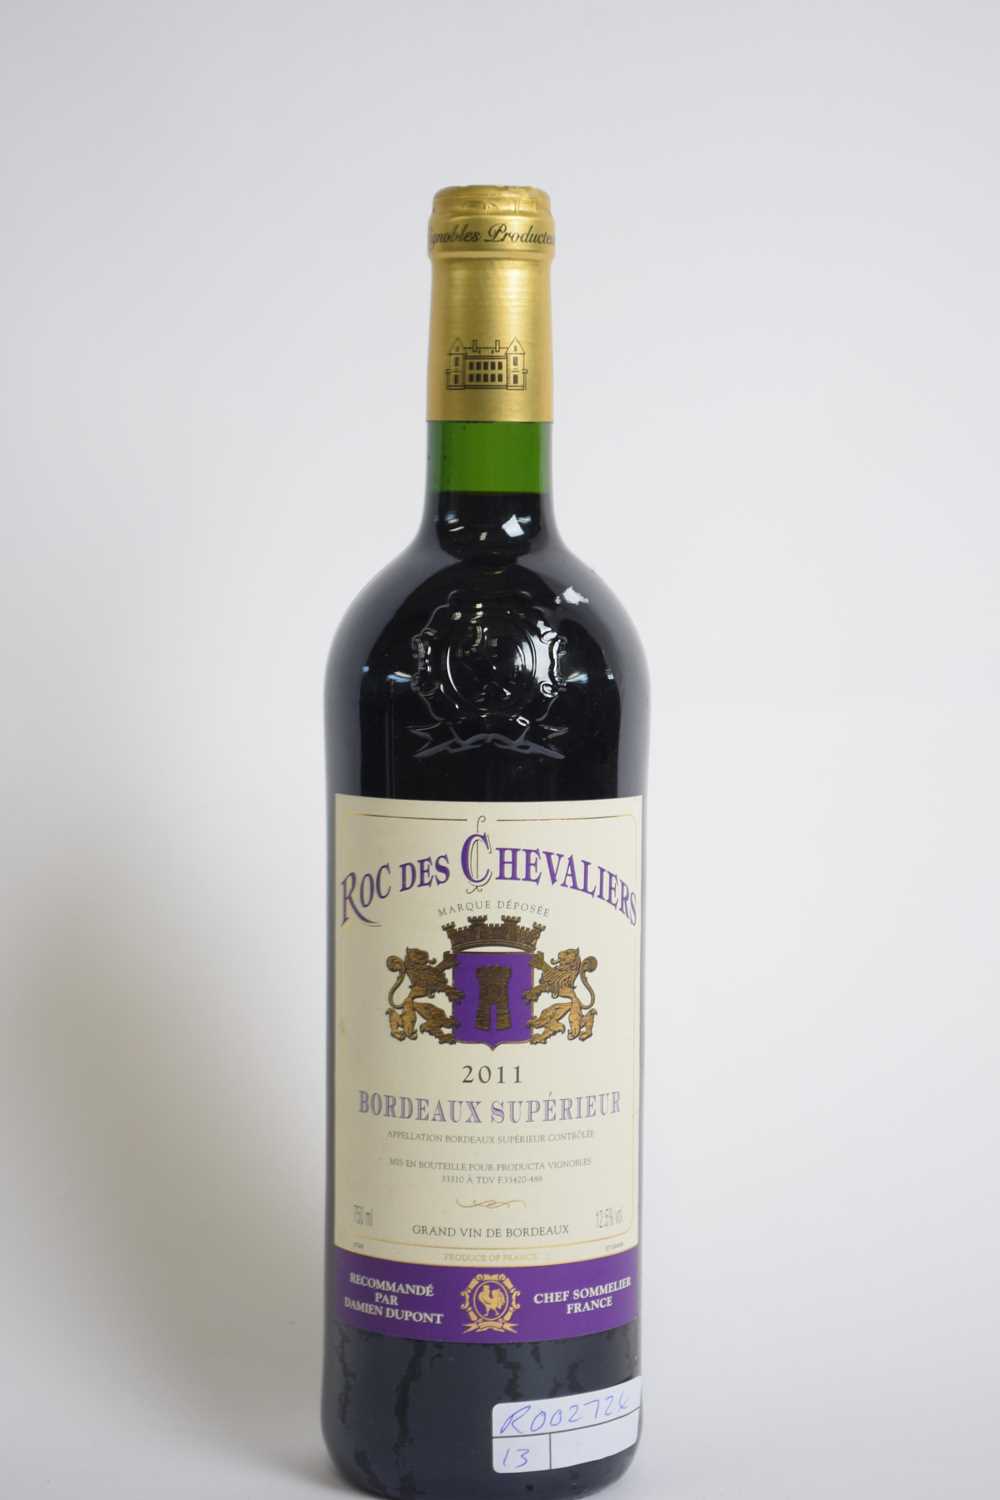 One bottle Bordeaux Superieur Roc des Chevaliers 2011, 750ml - Image 2 of 3